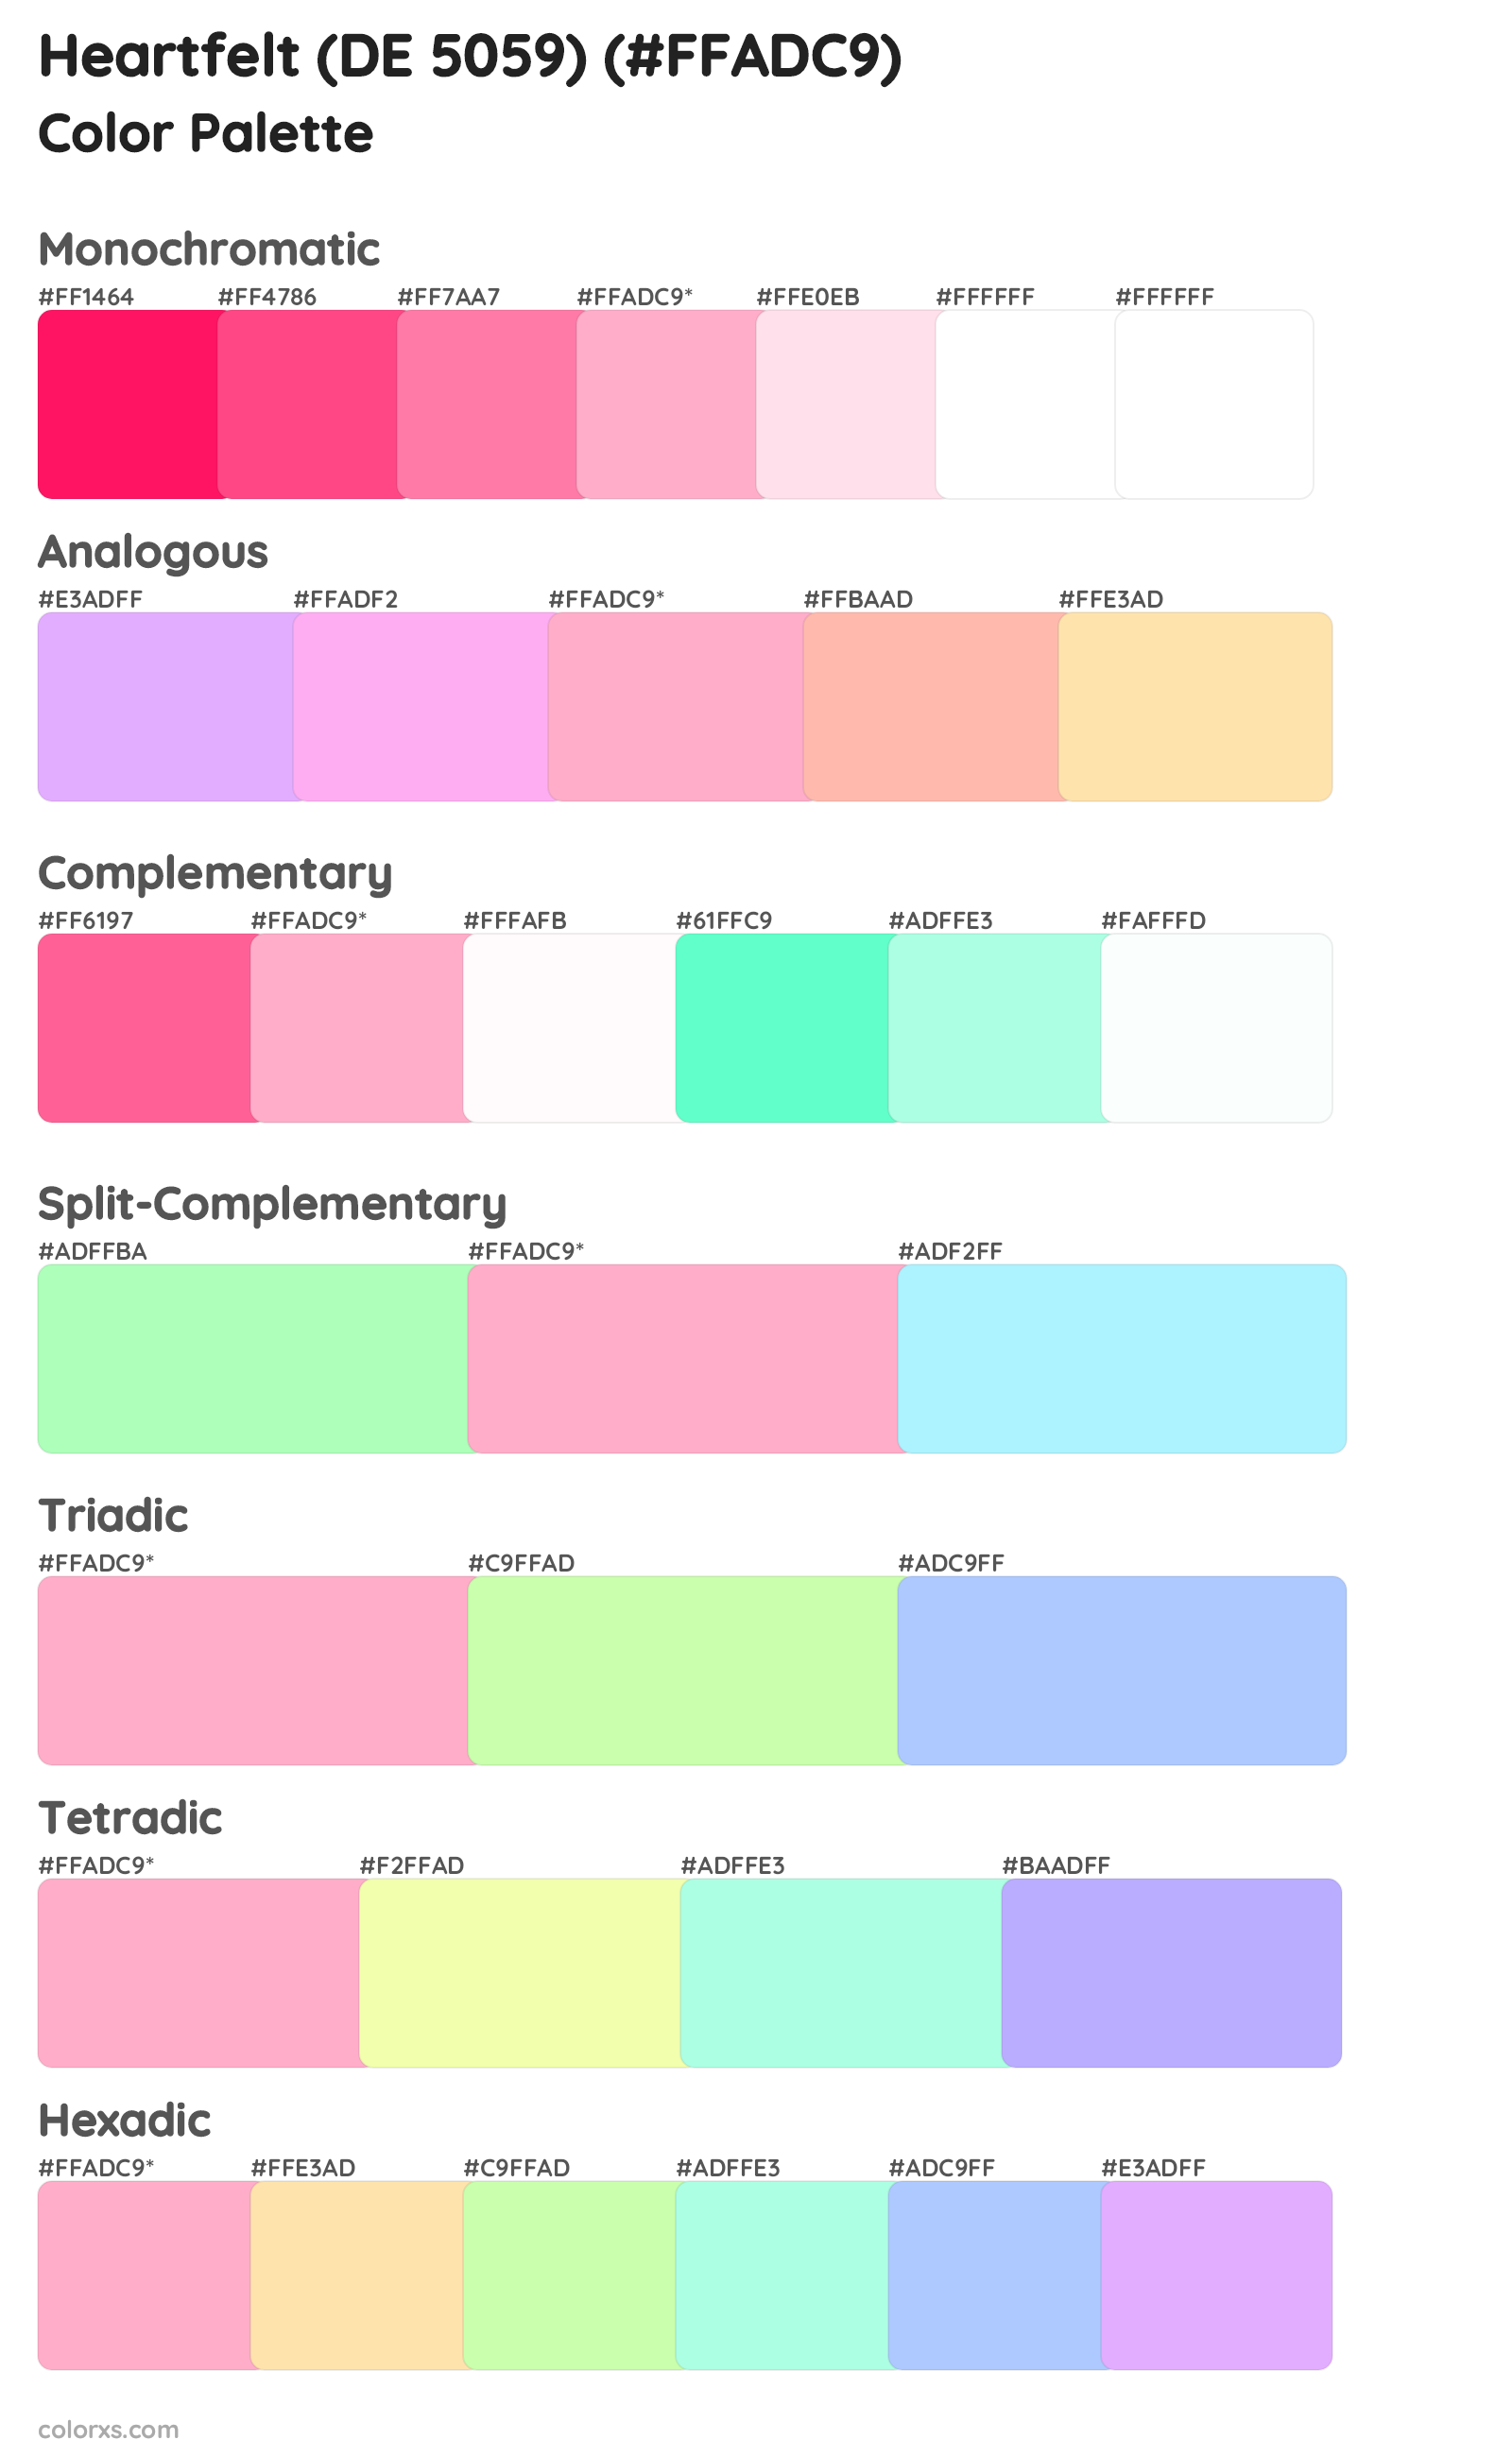 Heartfelt (DE 5059) Color Scheme Palettes